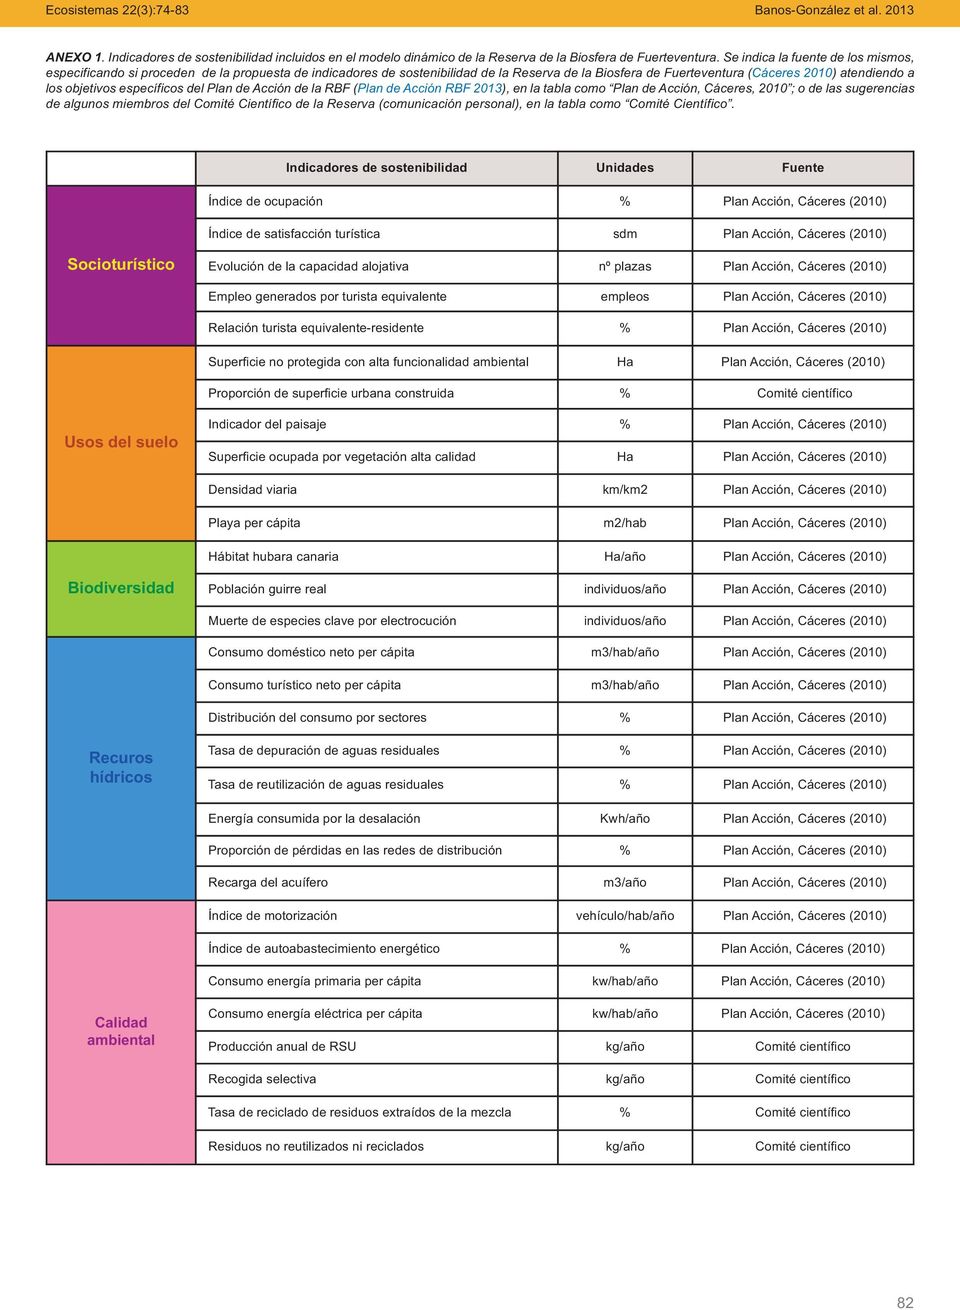 específicos del Plan de Acción de la RBF (Plan de Acción RBF 2013), en la tabla como Plan de Acción, Cáceres, 2010 ; o de las sugerencias de algunos miembros del Comité Científico de la Reserva